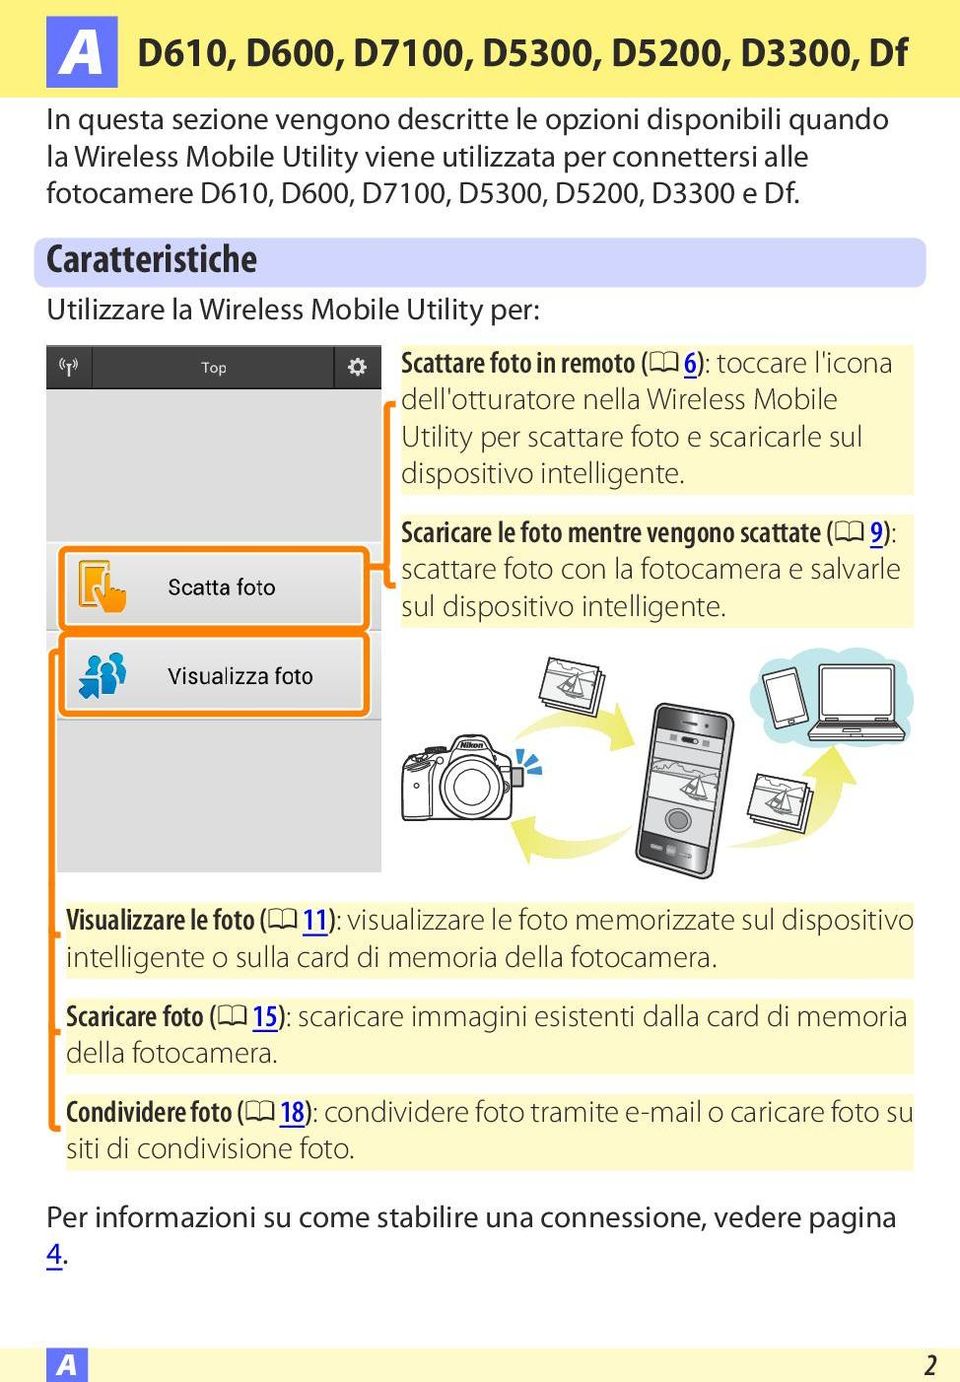 Caratteristiche Utilizzare la Wireless Mobile Utility per: Scattare foto in remoto (0 6): toccare l'icona dell'otturatore nella Wireless Mobile Utility per scattare foto e scaricarle sul dispositivo